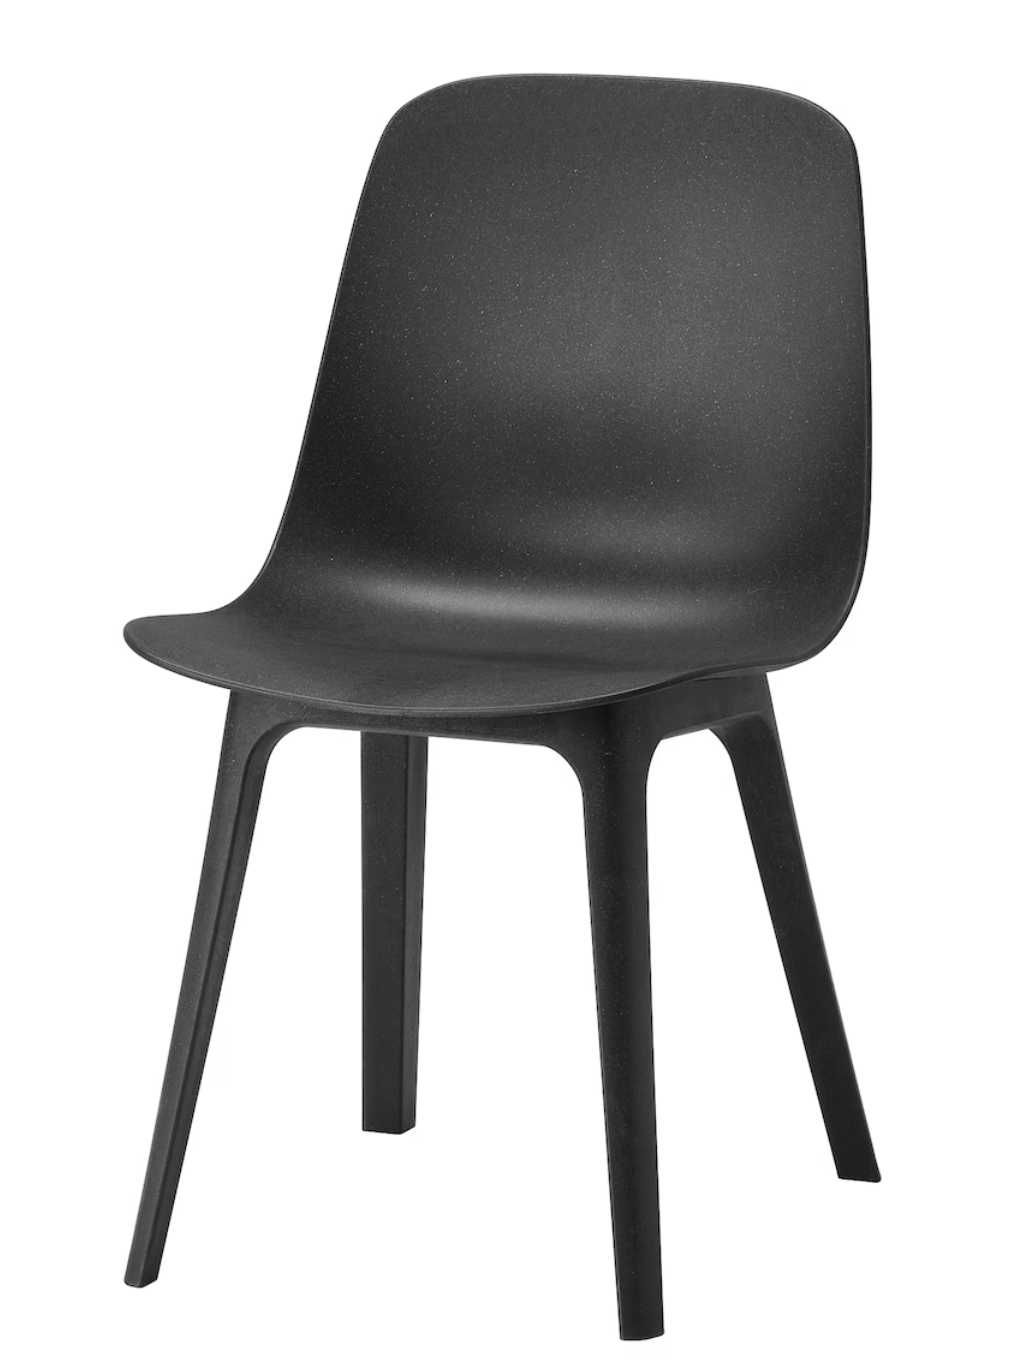 Krzesła ODGER z Ikea czarne w perfekcyjnej kondycji